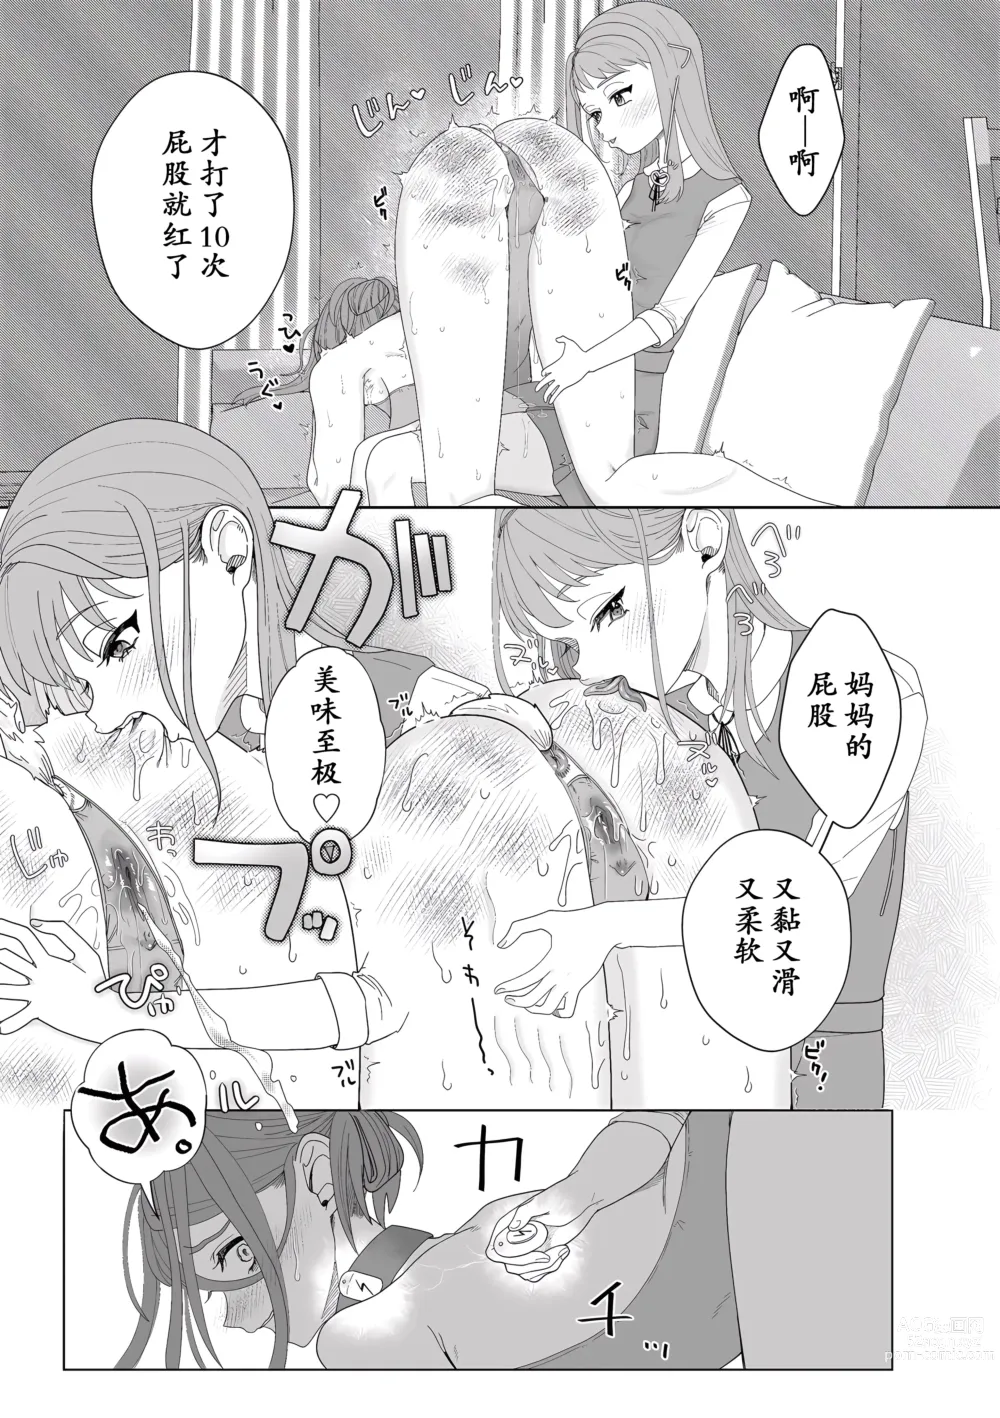 Page 27 of manga Mama wa Petto